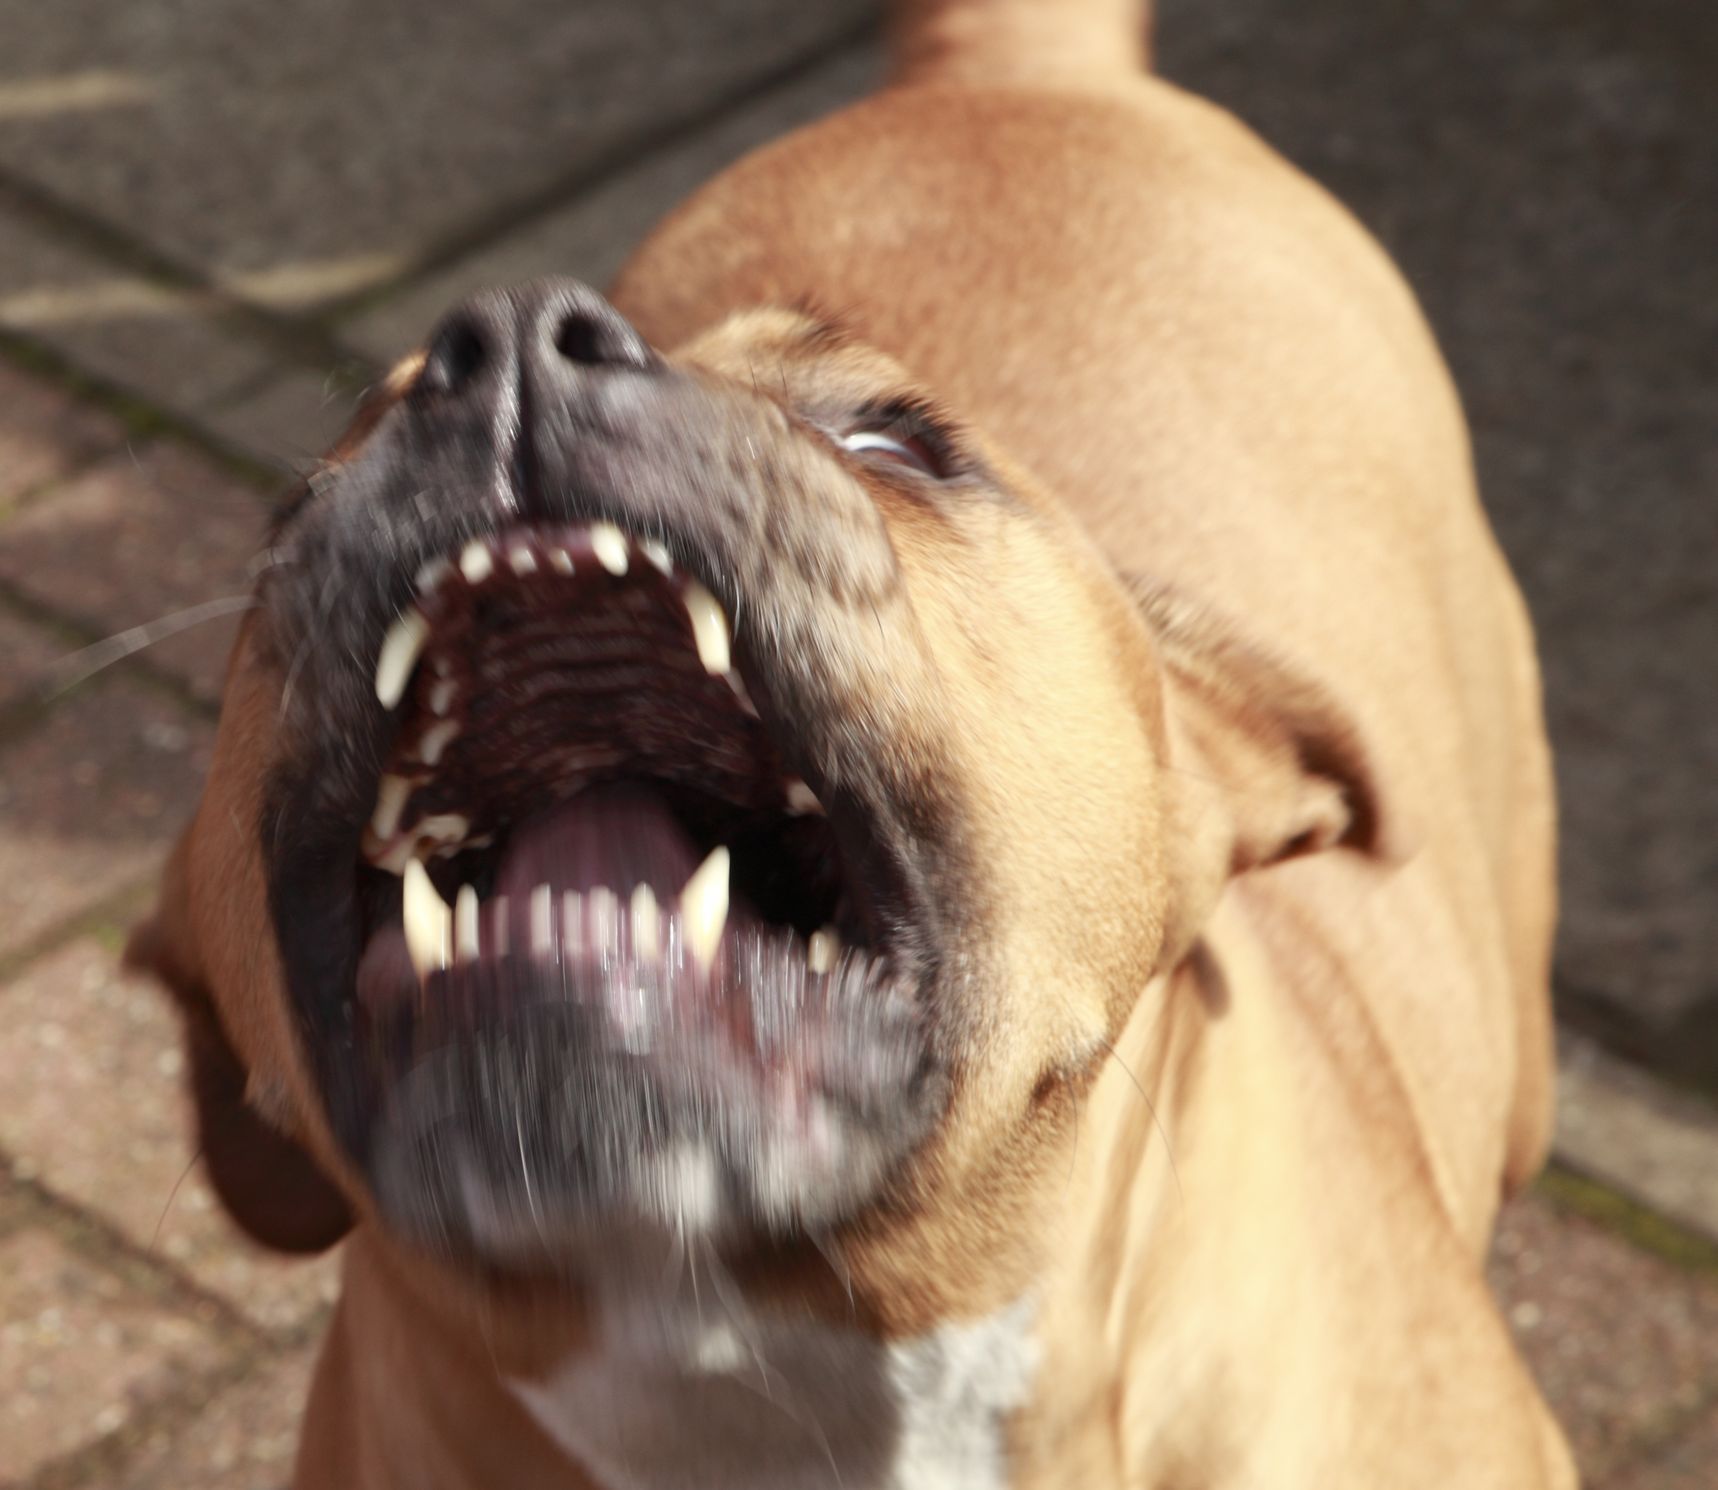 Pitbul - útok psa - agresivní pes